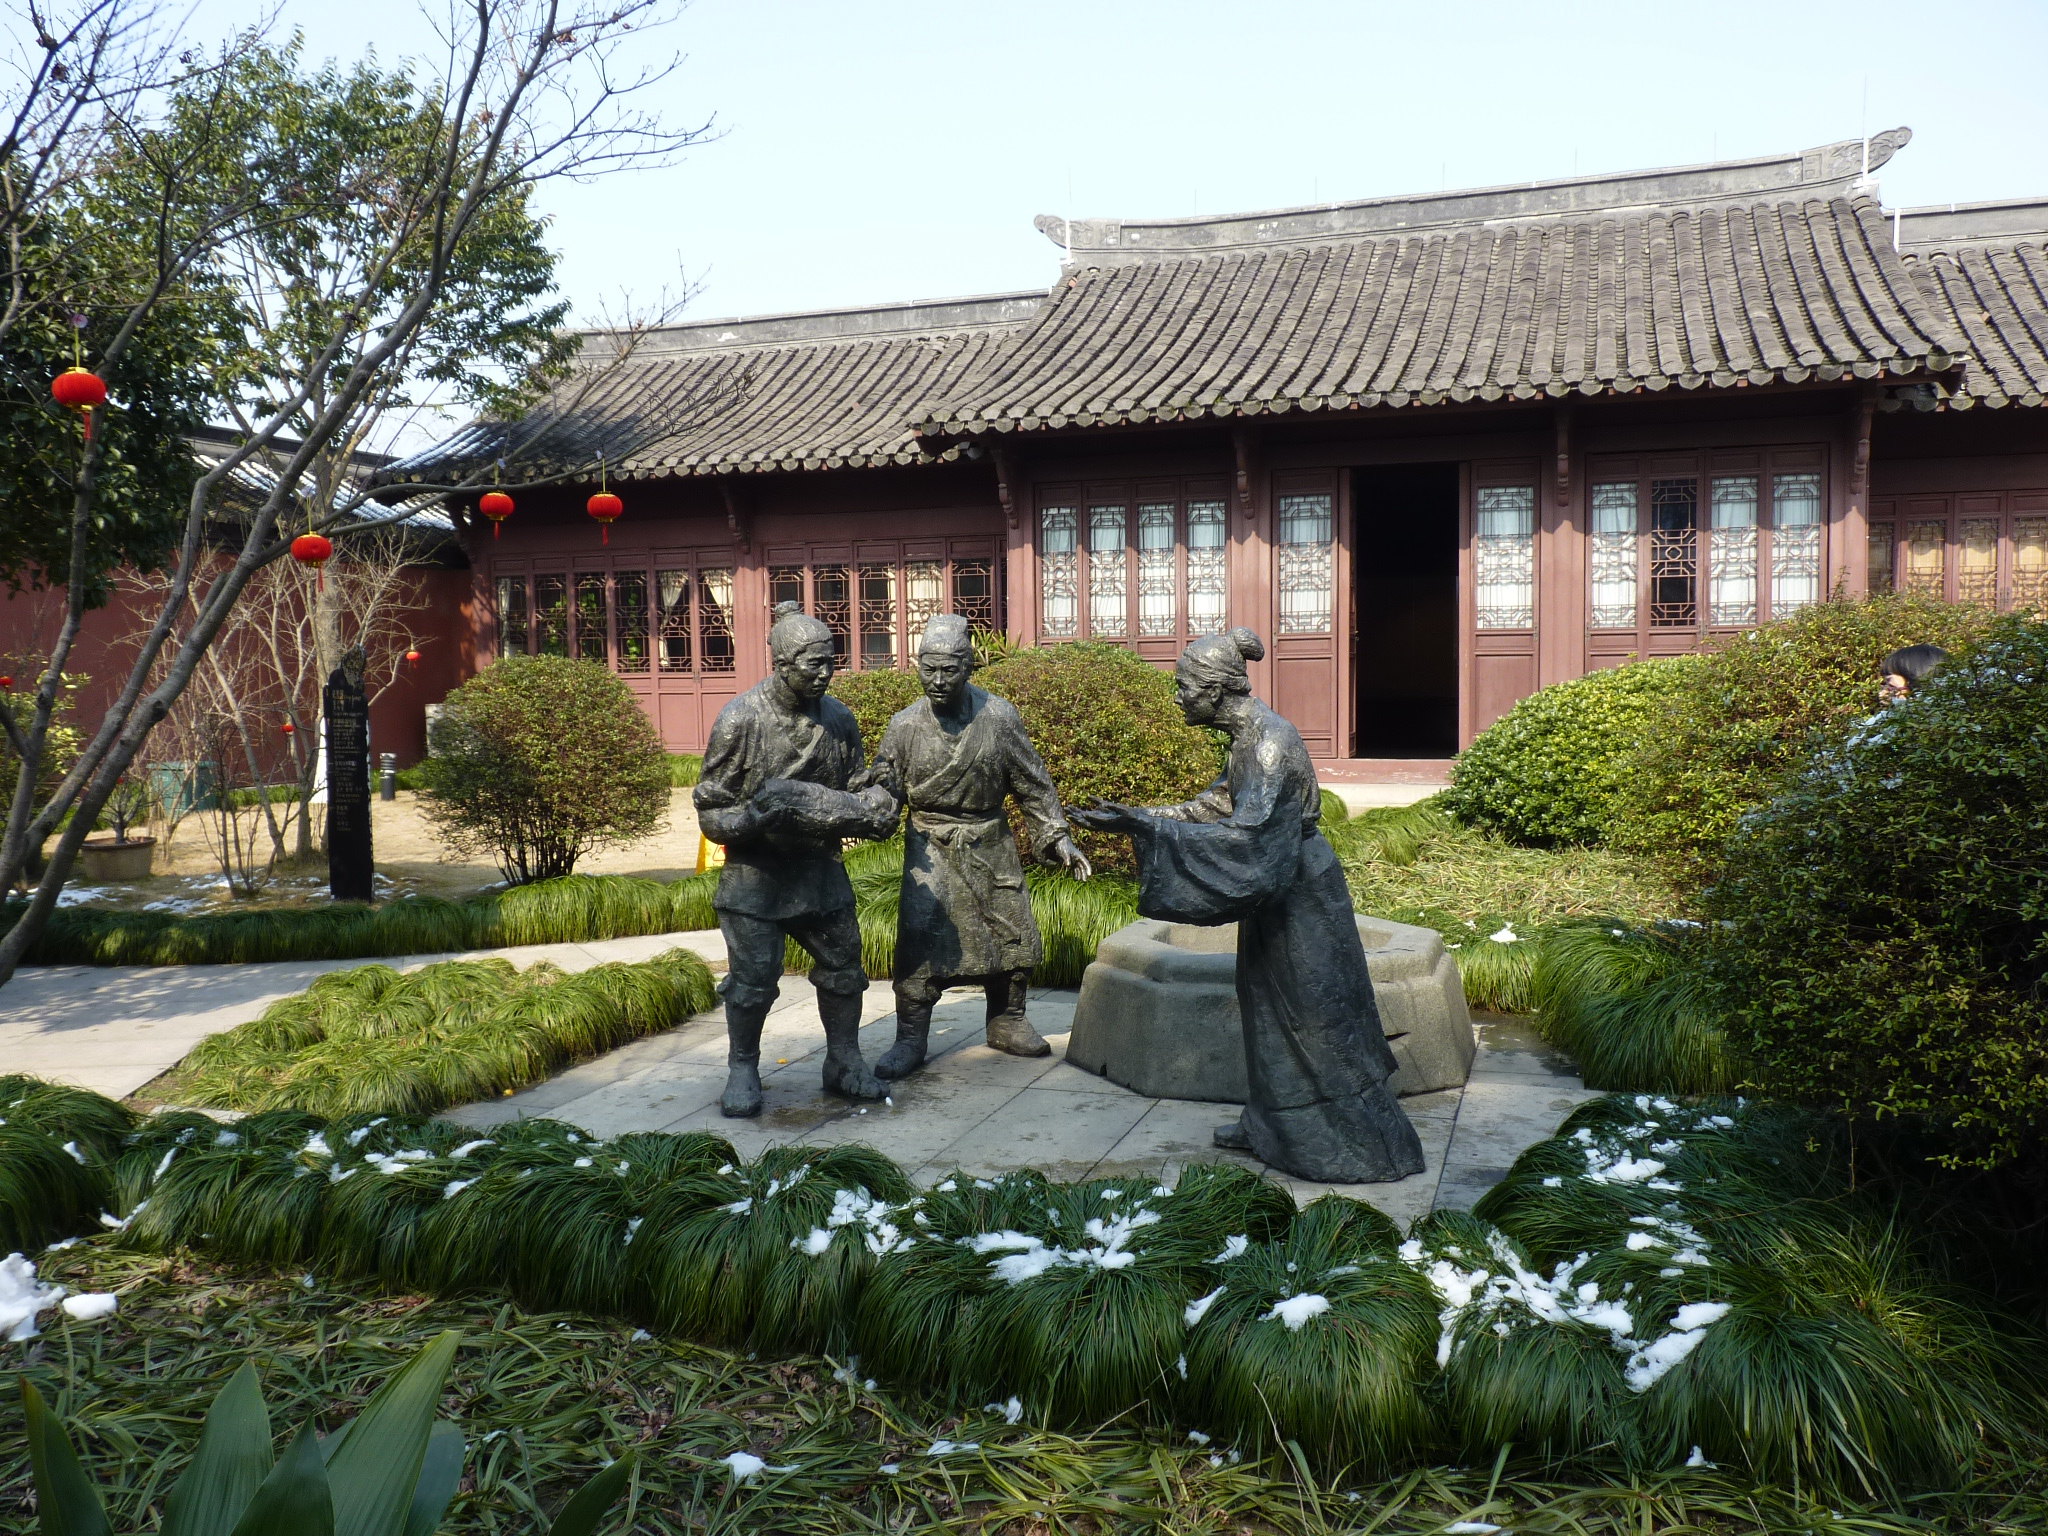 杭州钱王祠在柳浪闻莺公园附近,西湖博物馆右侧,面对西湖,背靠南山路